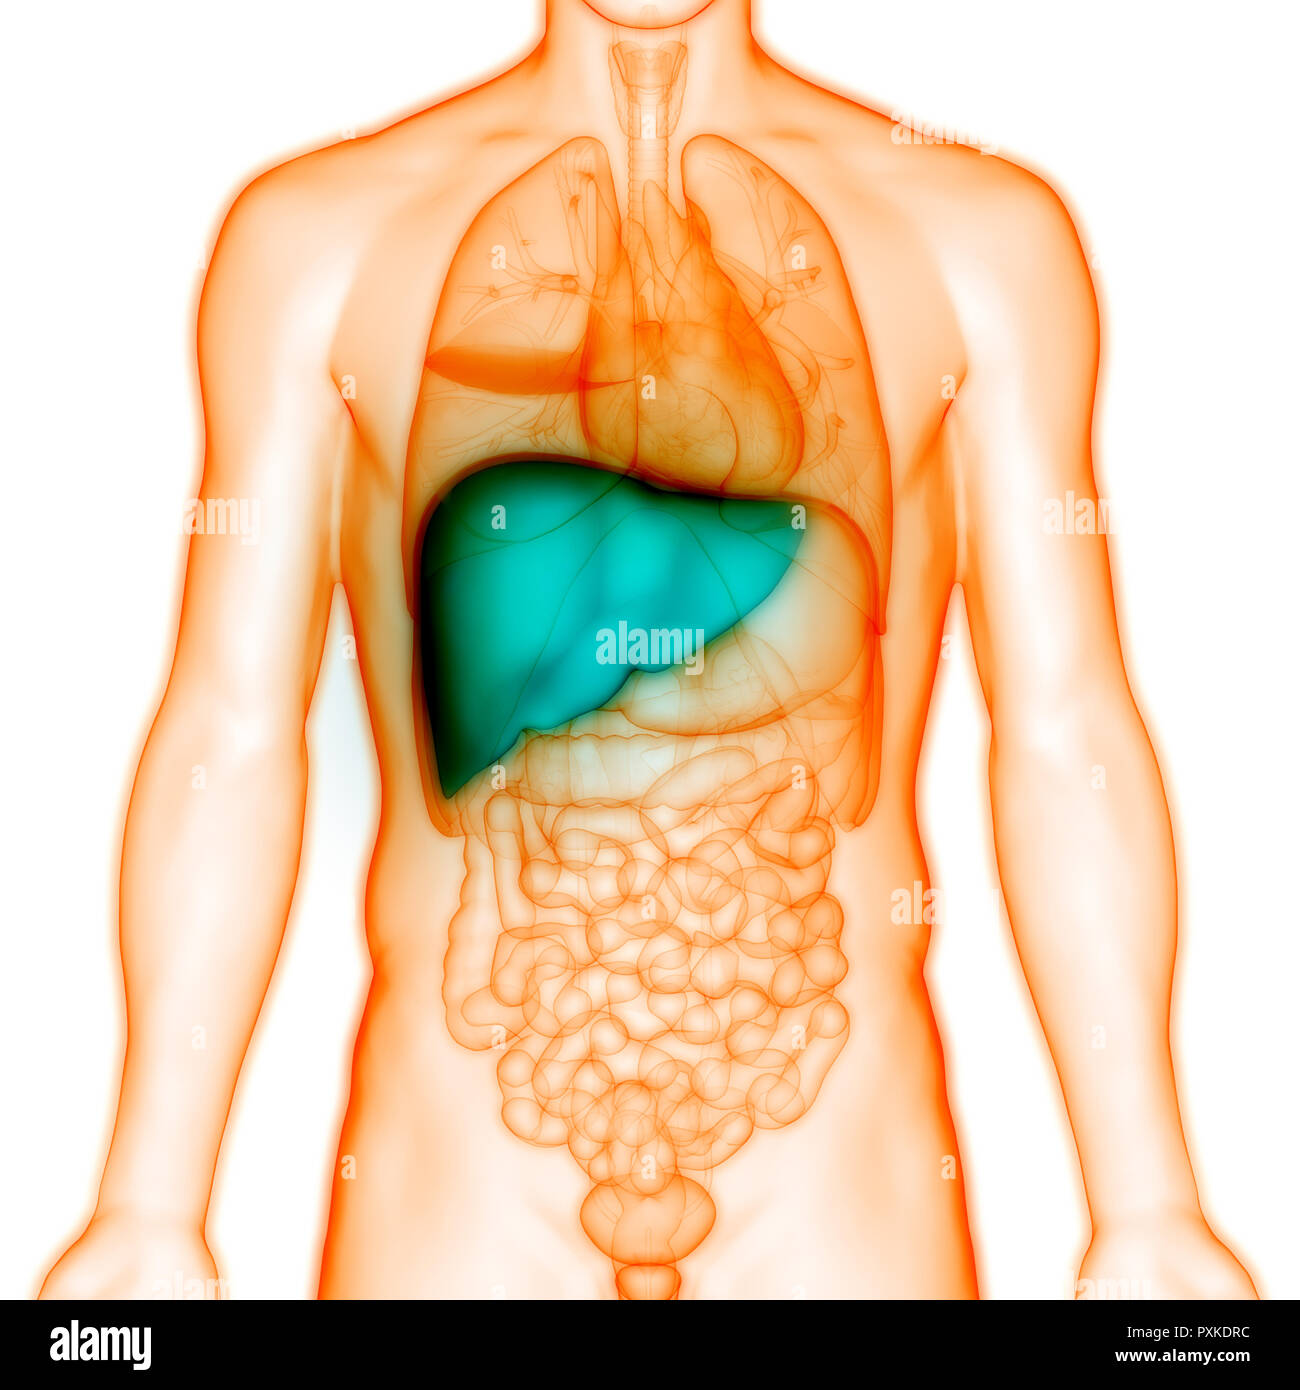 С какой стороны находится печень у мужчин. Расположение печени в организме. Внутренние органы человека печень. Анатомическое расположение печени.